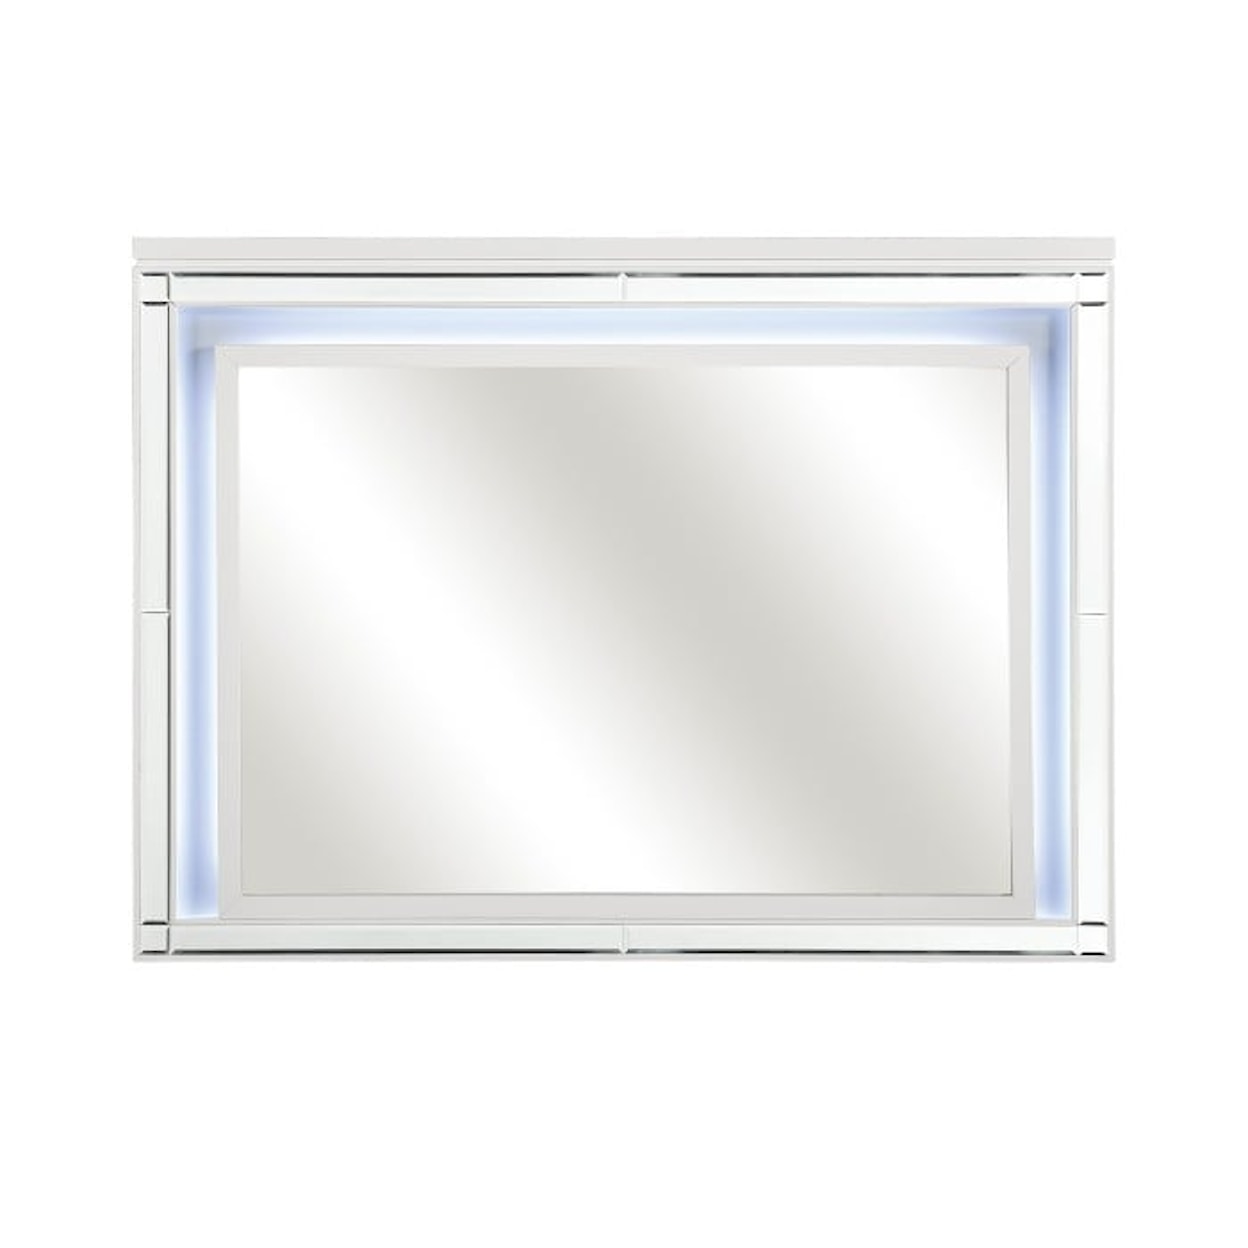 Homelegance Furniture Alonza LED Lit Mirror